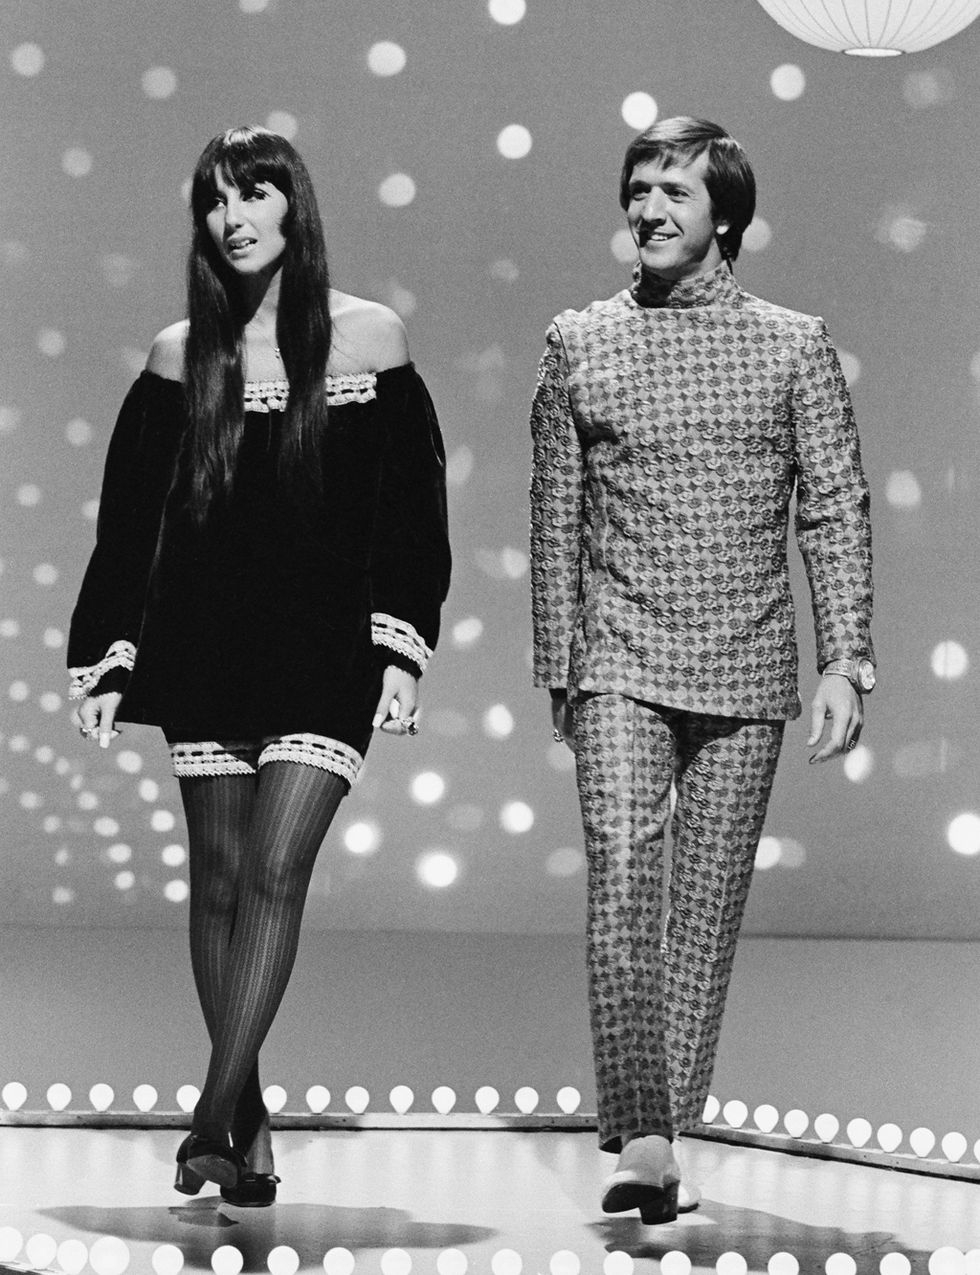 <p>En 1965, Sonny y Cher lanzaron su himno al amor, ‘I Got You Babe’. La canción fue número 1 en las listas Billboard así que quizás, finalmente, su amor pudo pagar el alquiler.</p><p>&nbsp;</p>